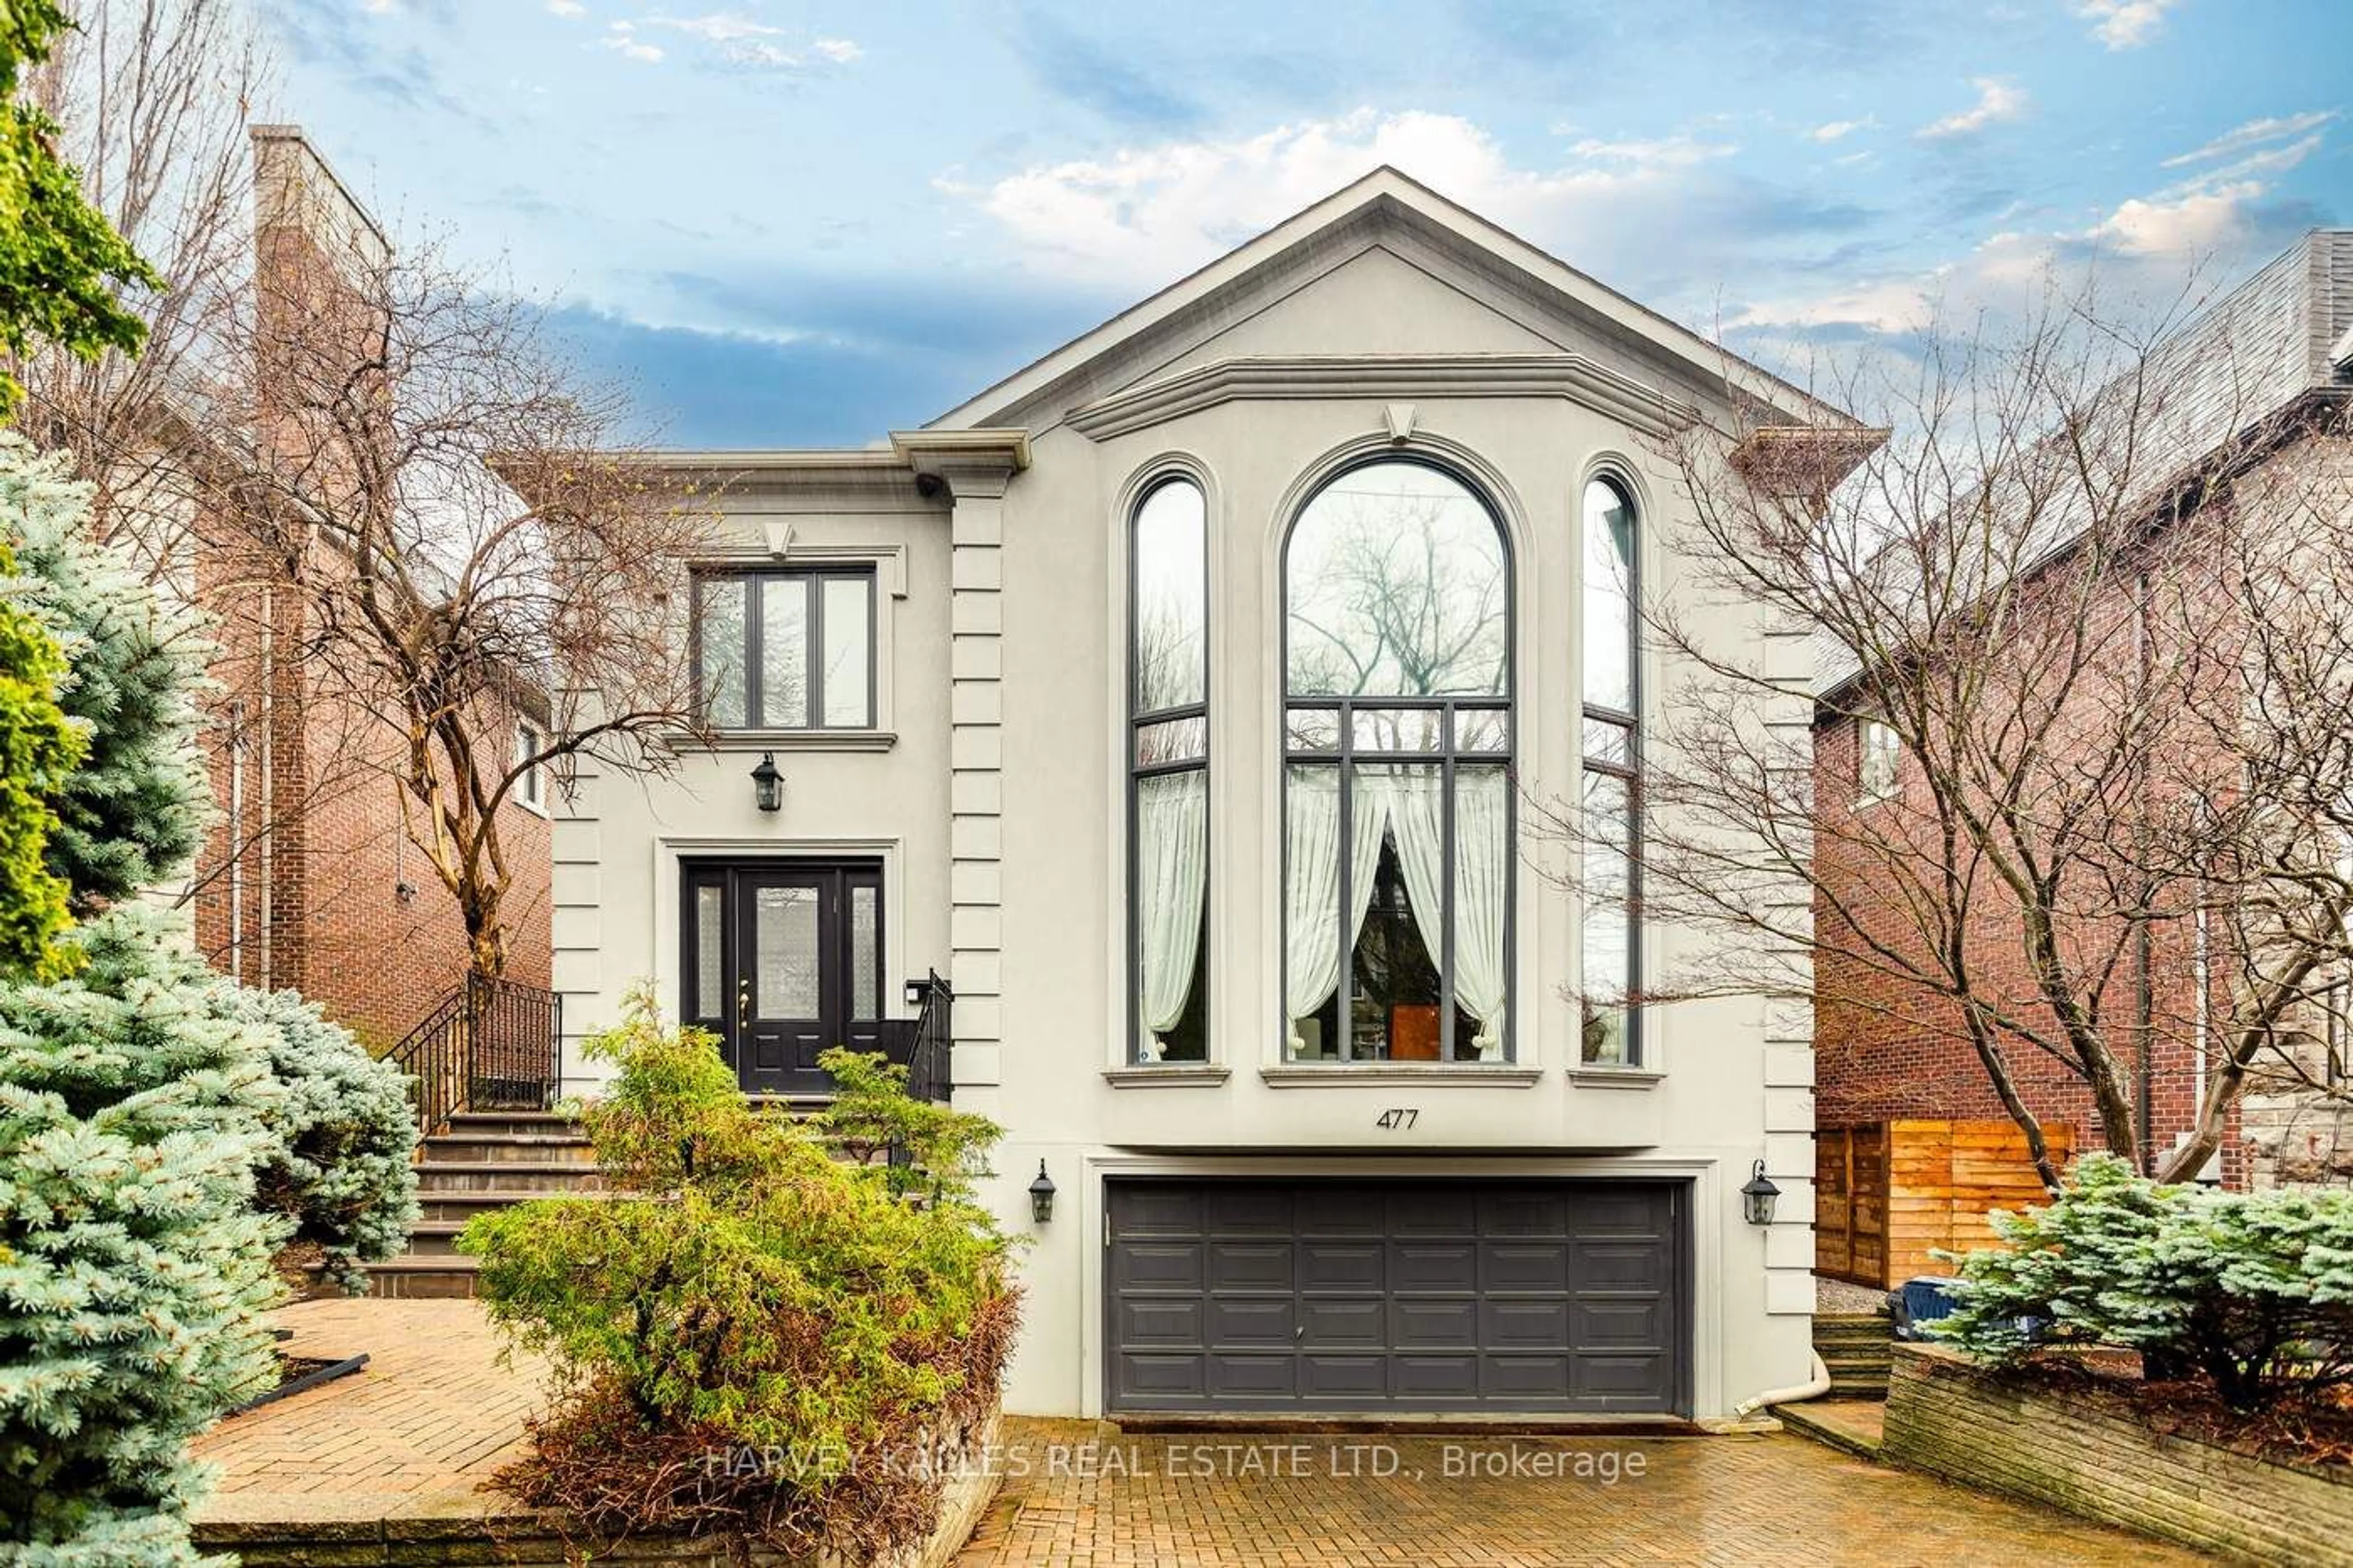 Home with brick exterior material for 477 Douglas Ave, Toronto Ontario M5M 1H6